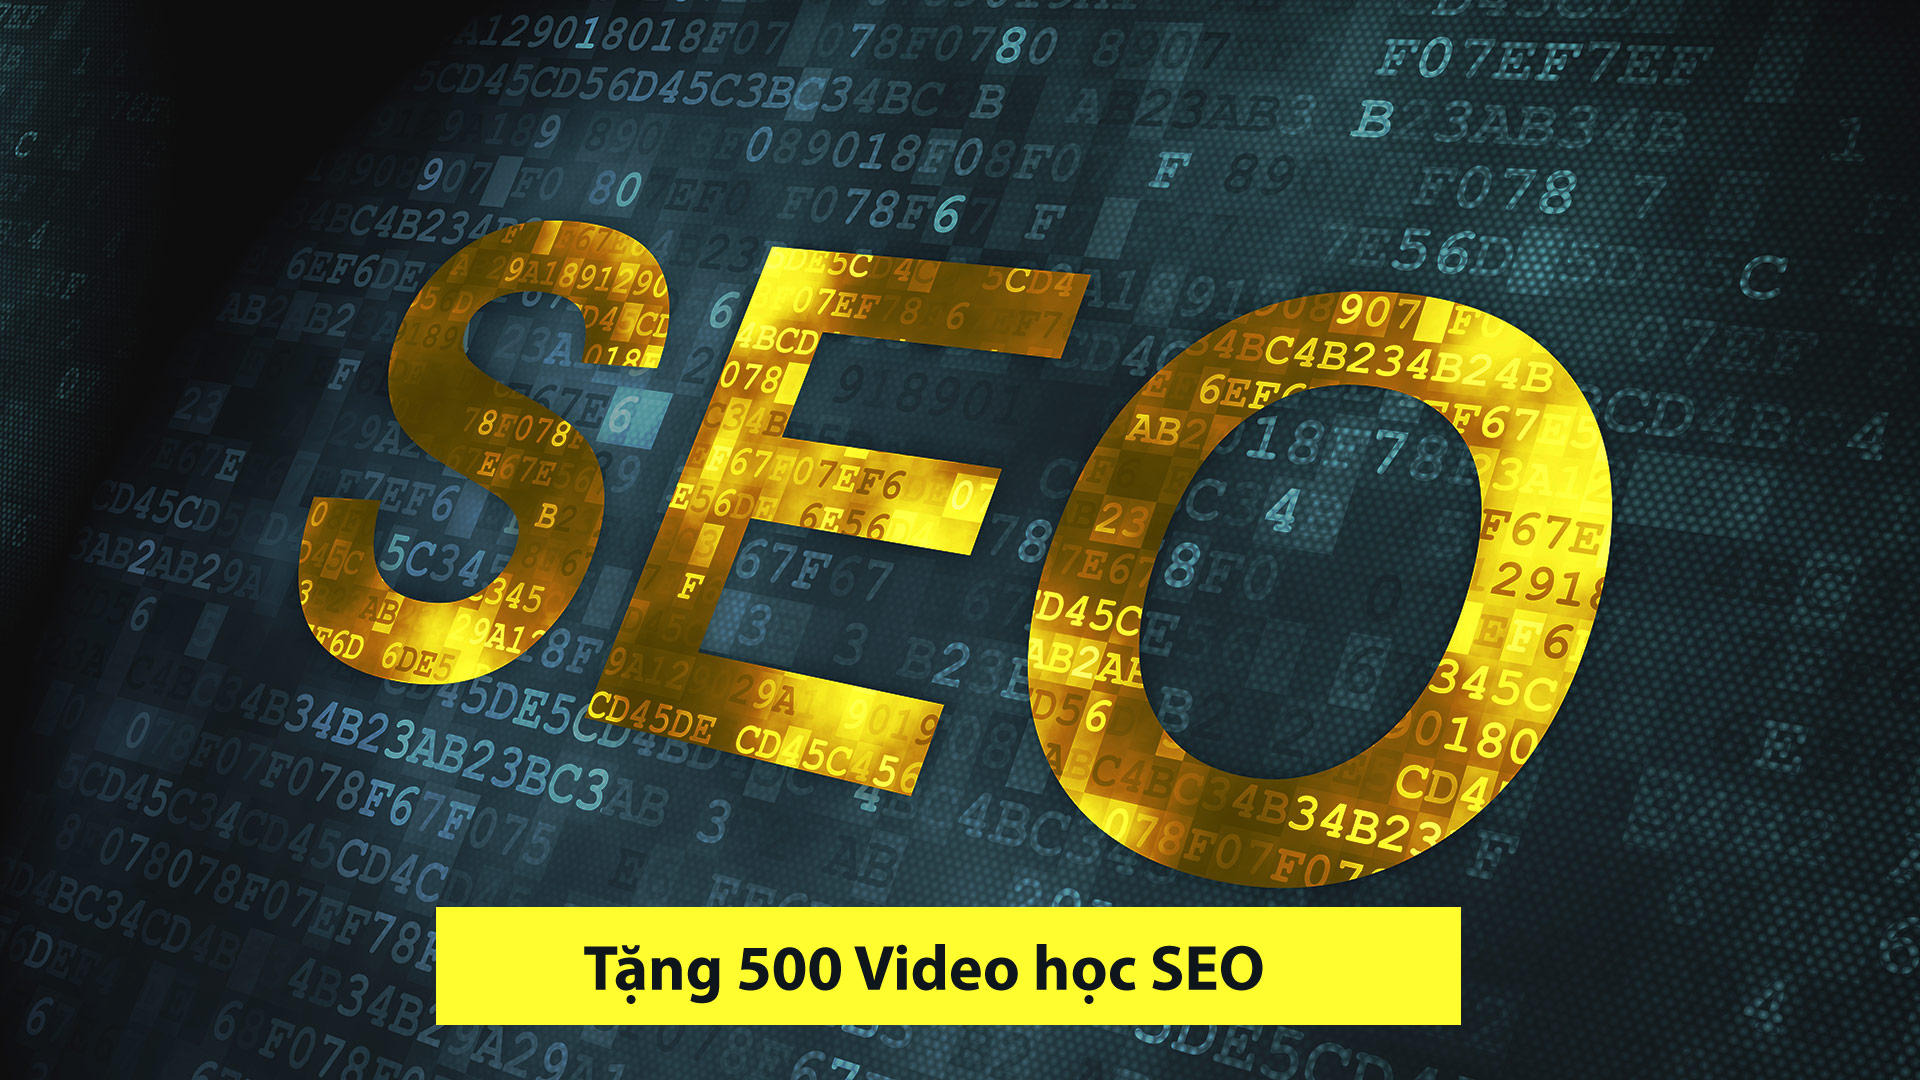 Tặng 500 video hướng dẫn SEO từ cơ bản đến nâng cao